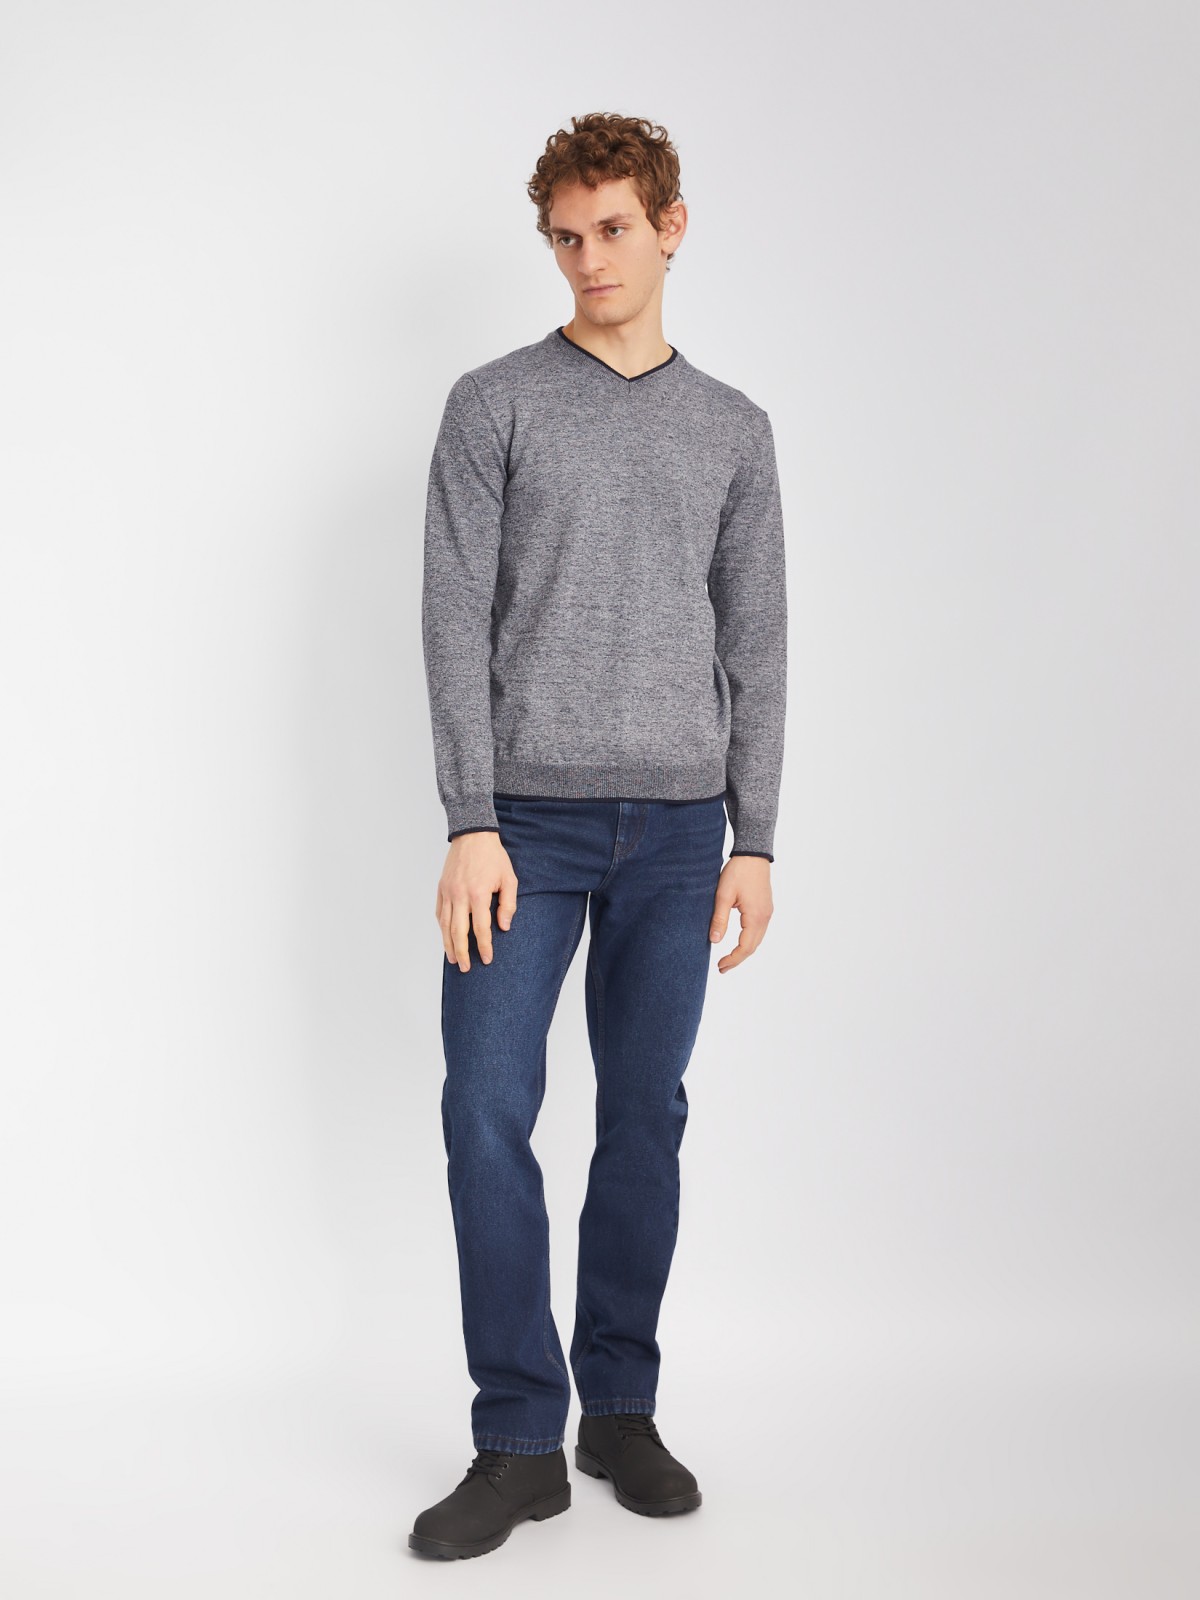 Тонкий трикотажный пуловер с длинным рукавом zolla 014116101082, цвет темно-серый, размер M - фото 2